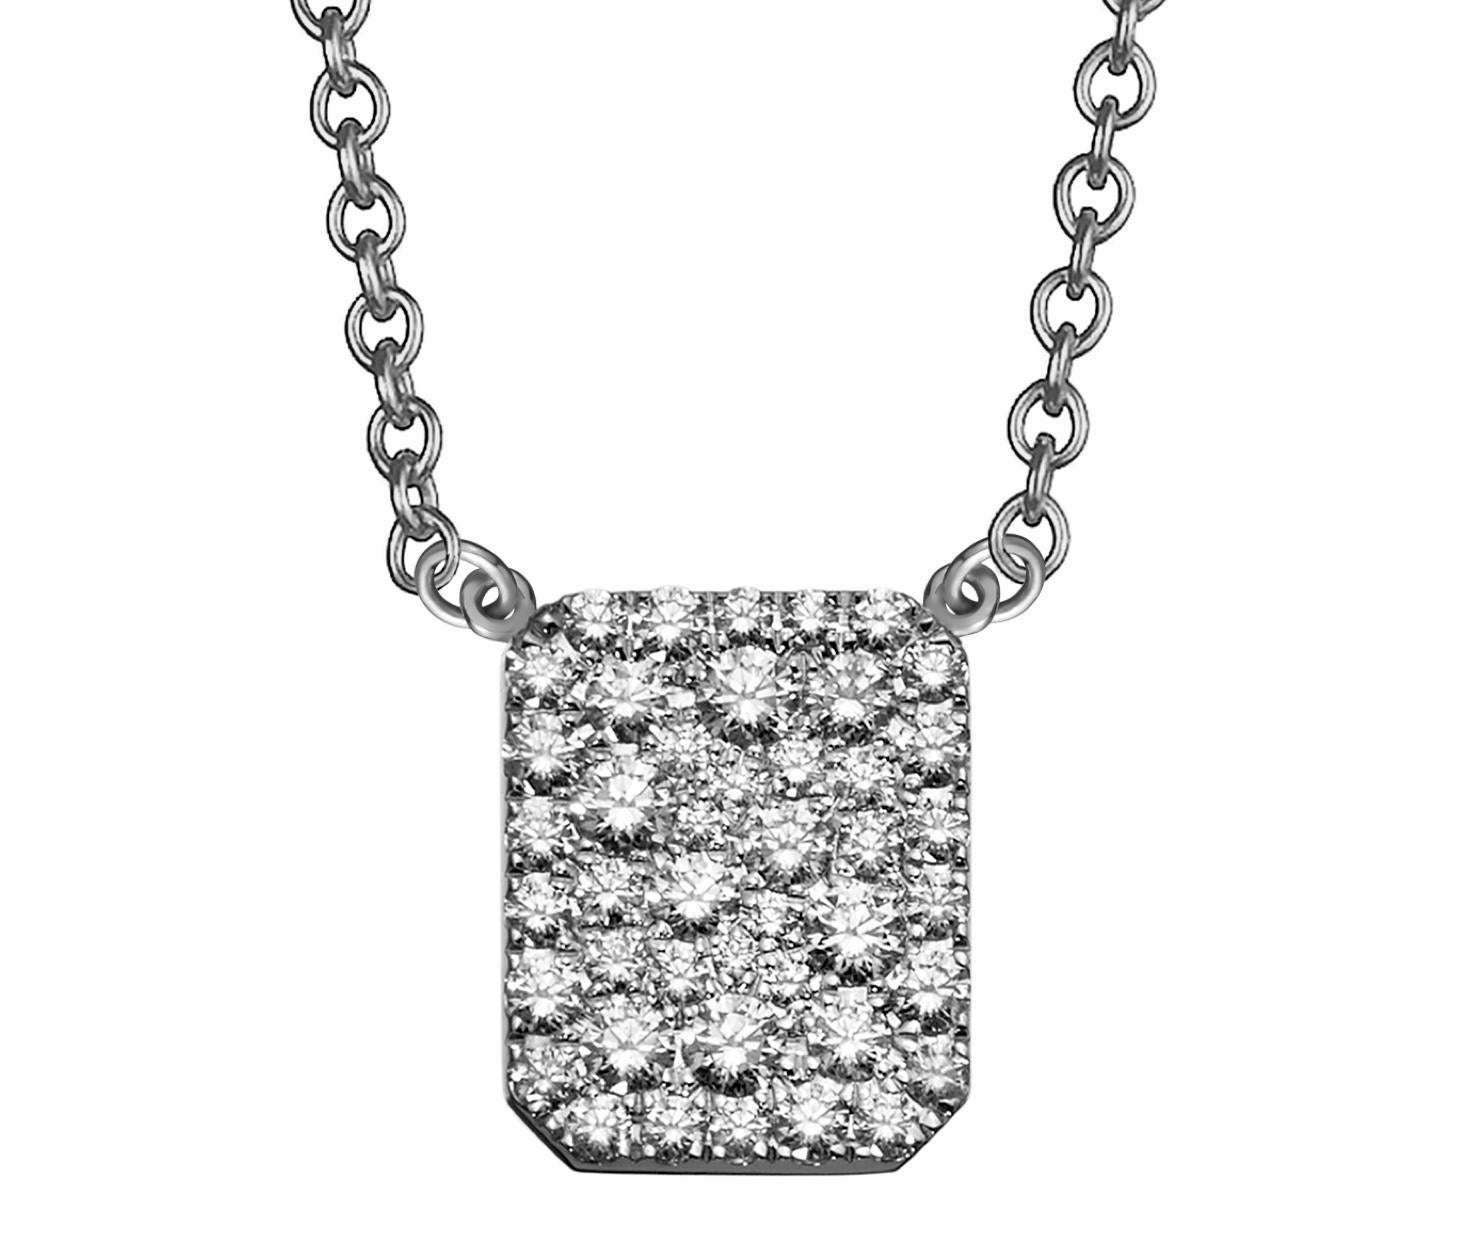 18k gold scapular necklace